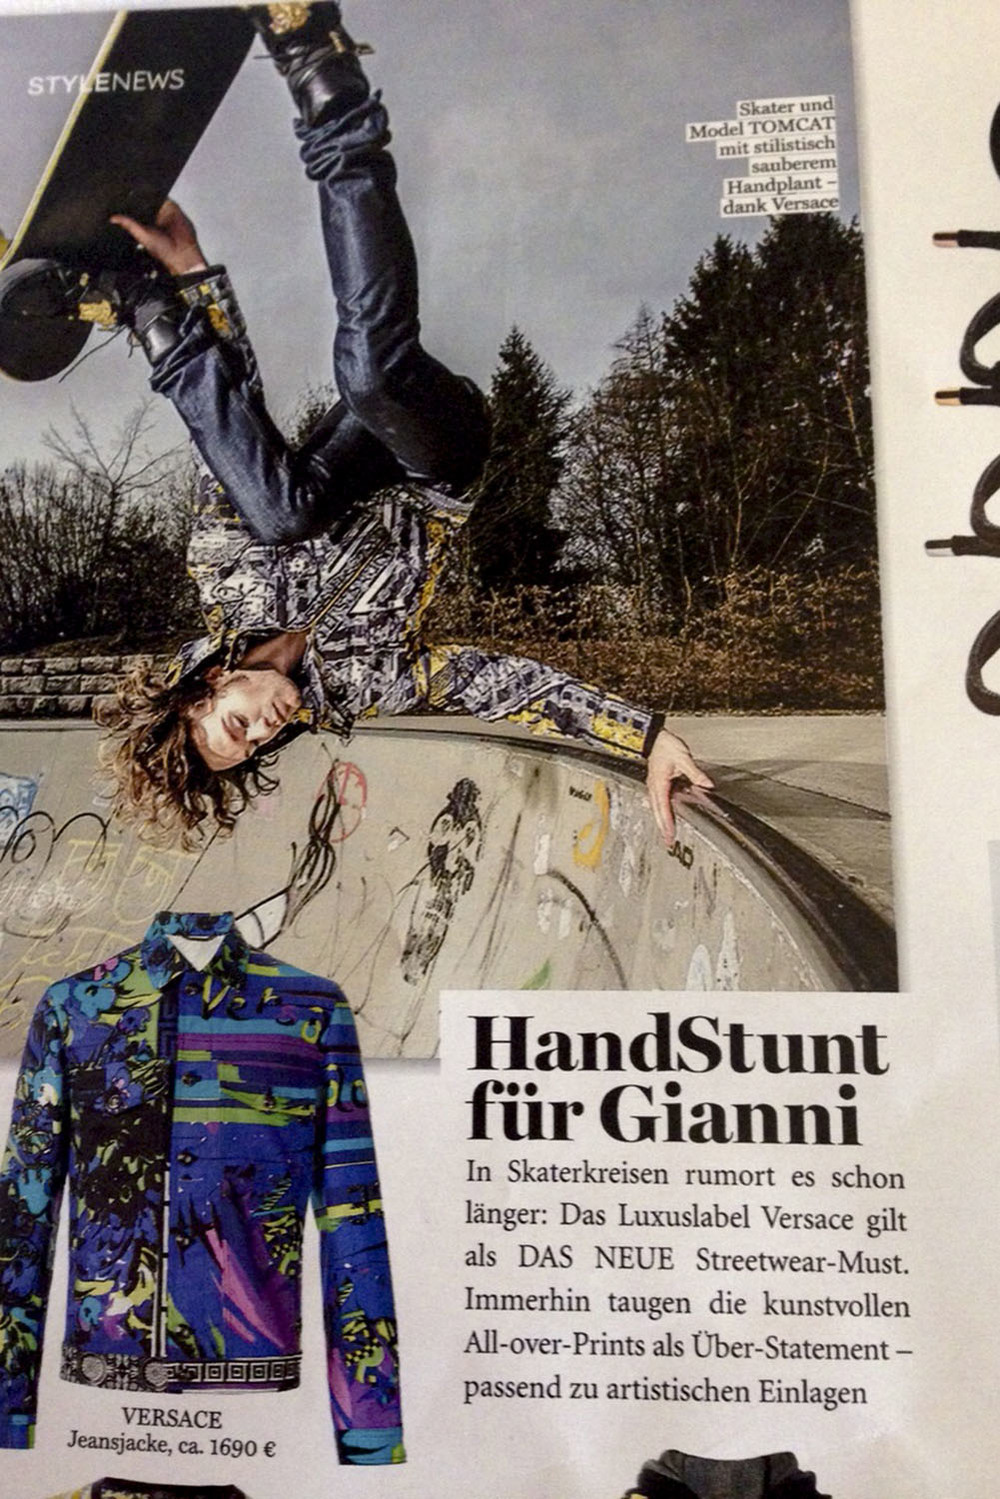 Skateboard Model Skater München Tom Cat für Versace Instyle Magazine.jpg